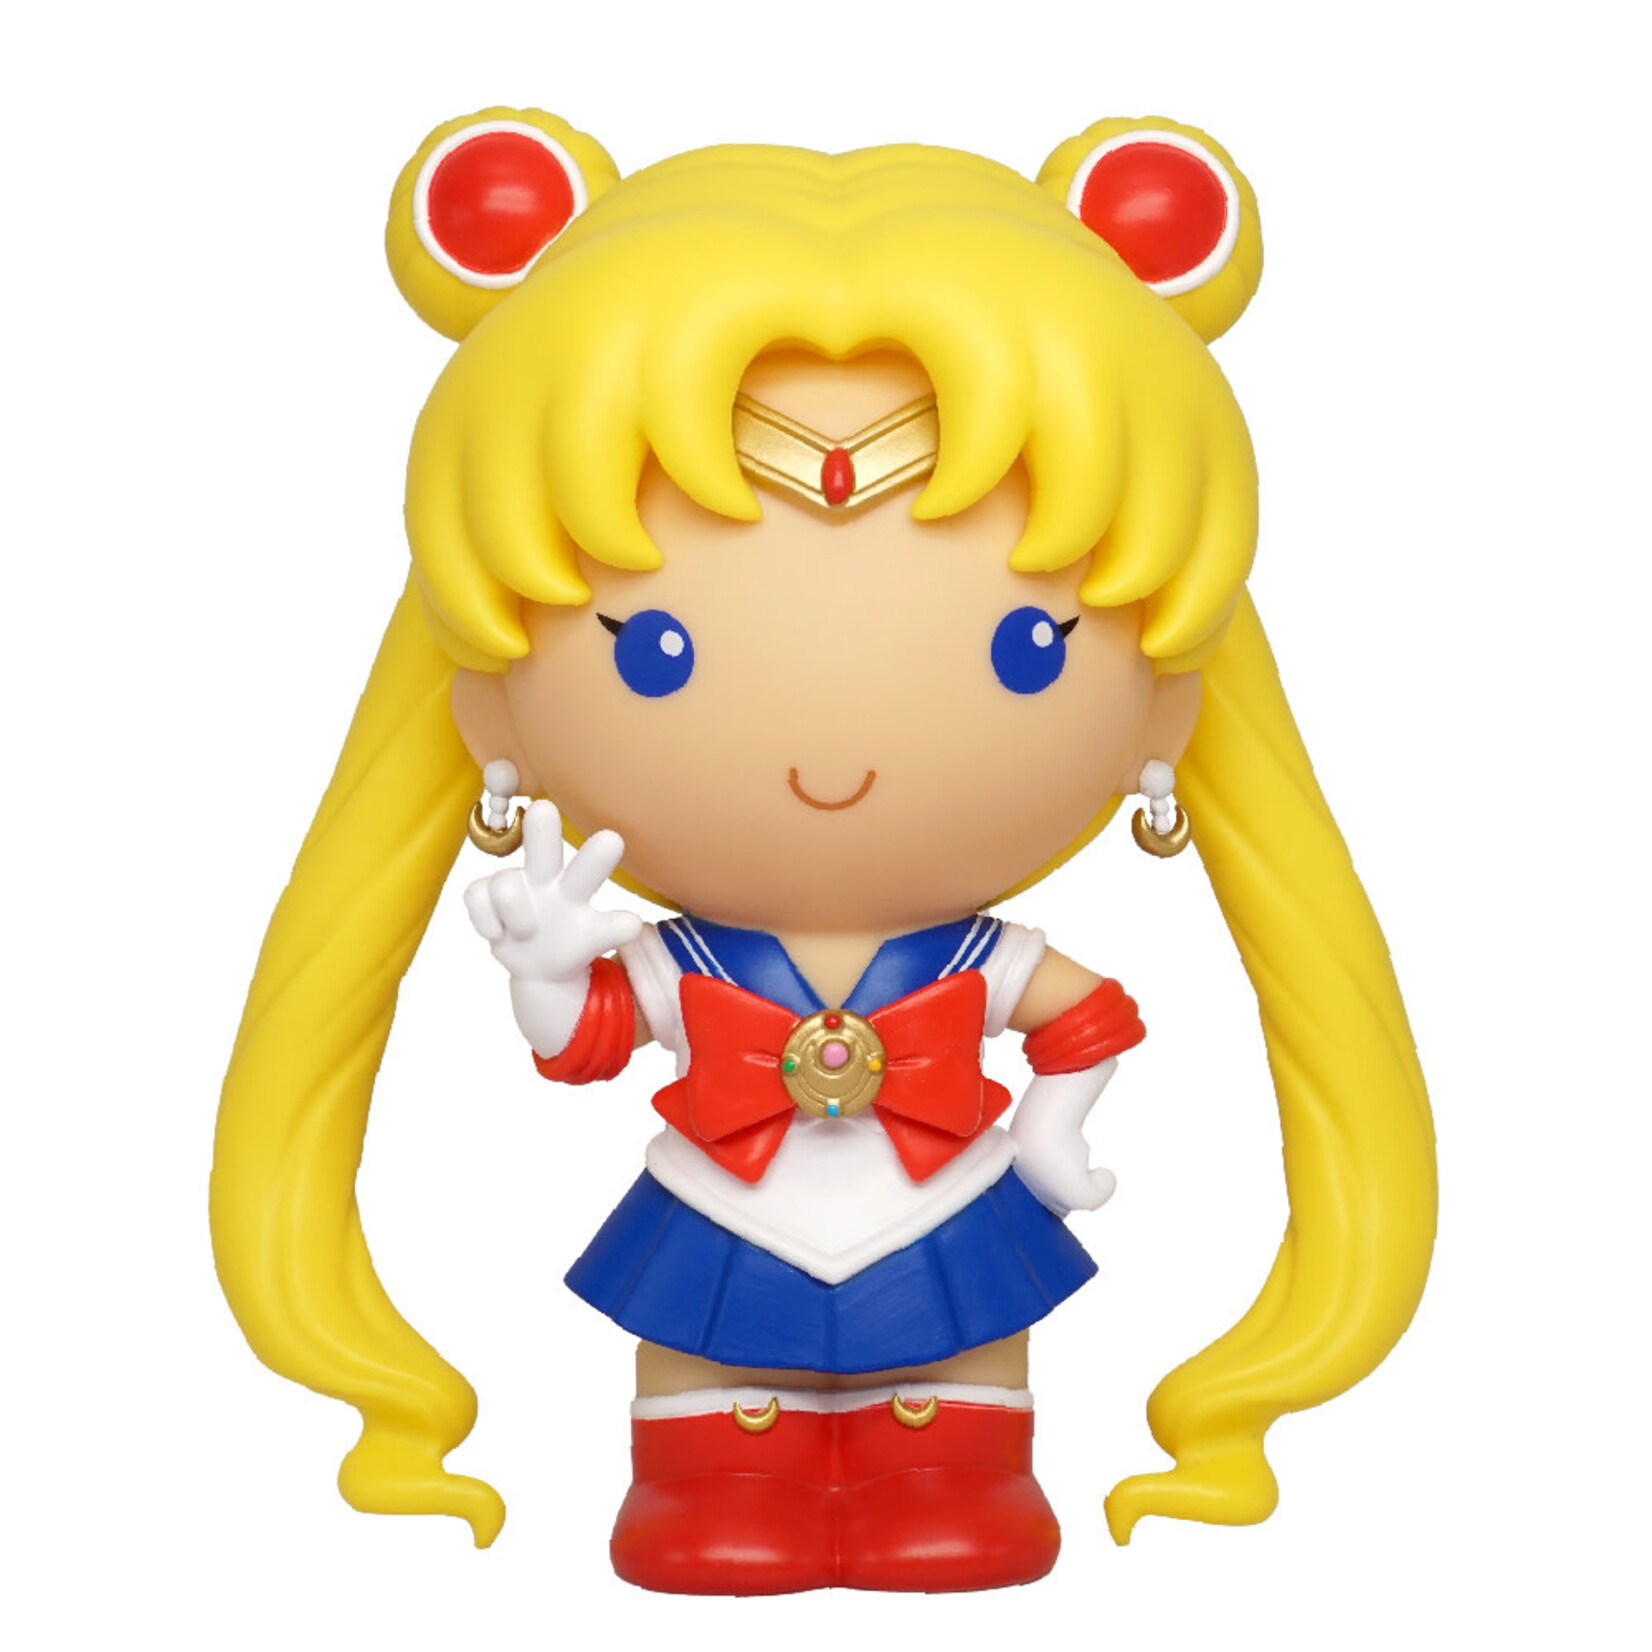 Sailor Moon Sailor Moon - Sailor Moon Licensed Coin Bank